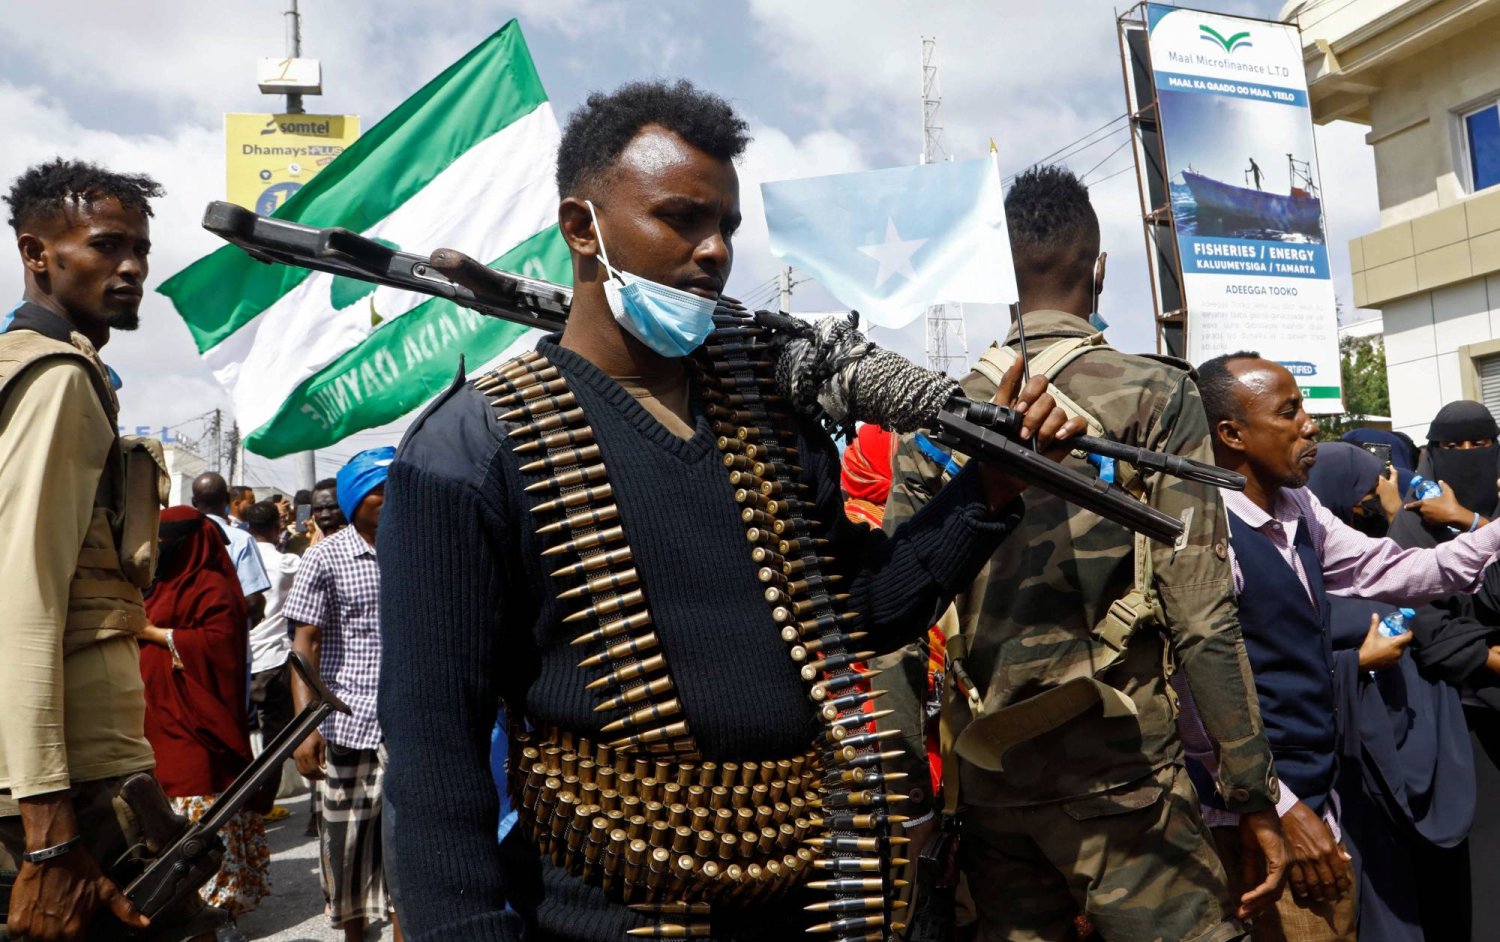 ضابط شرطة صومالي يقف للحراسة خلال مسيرة ضد صفقة ميناء إثيوبيا وأرض الصومال على طول شارع KM4 في مقديشو (رويترز)